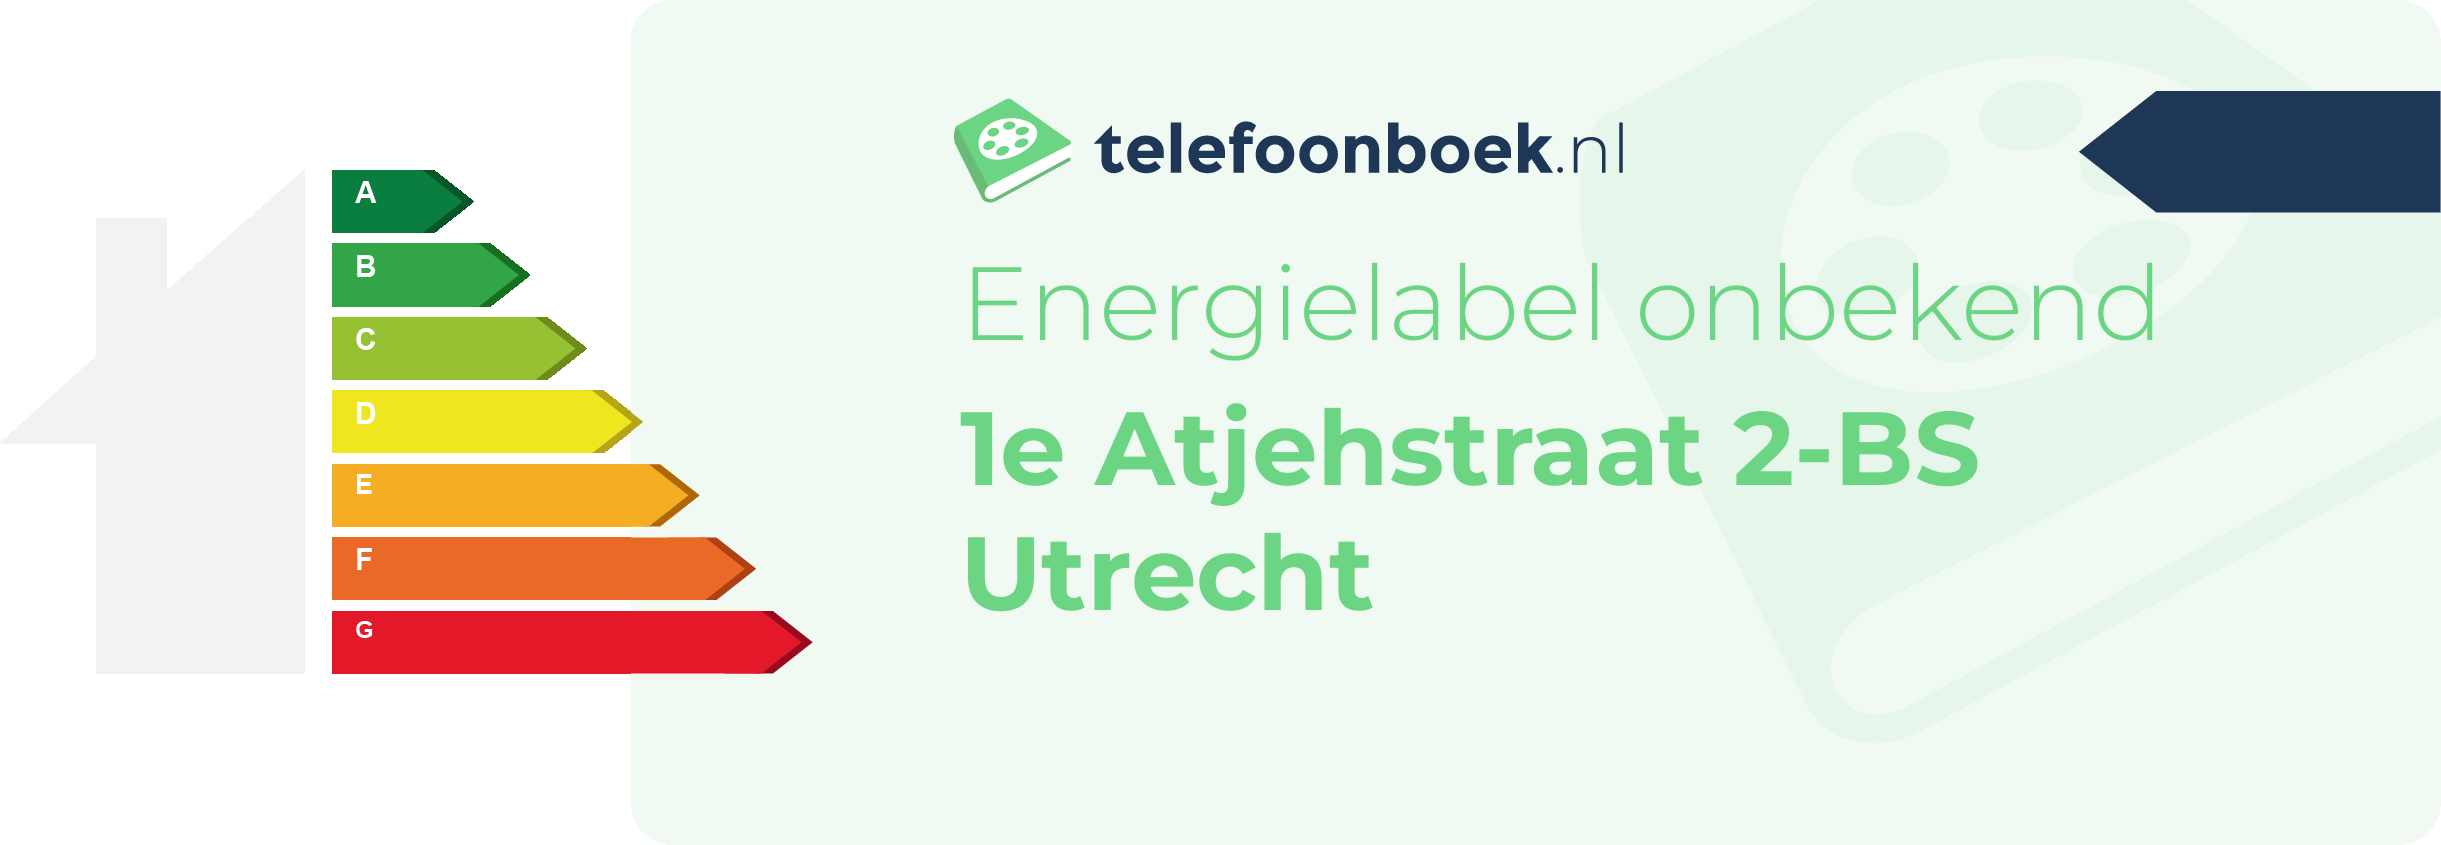 Energielabel 1e Atjehstraat 2-BS Utrecht